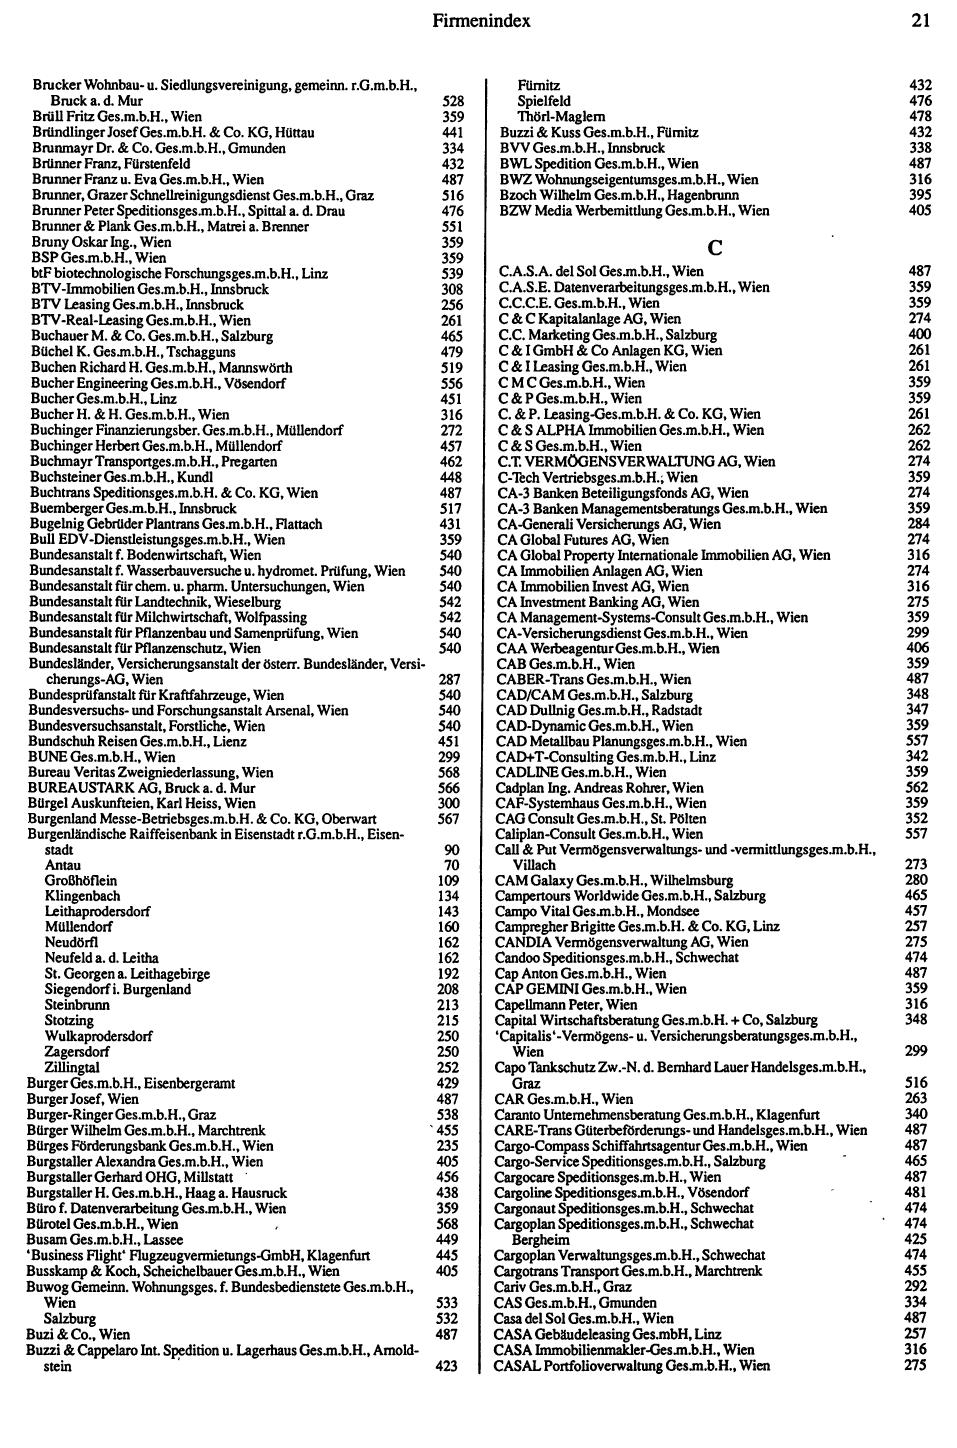 Dienstleistungs-Compass 1991/92 - Seite 23